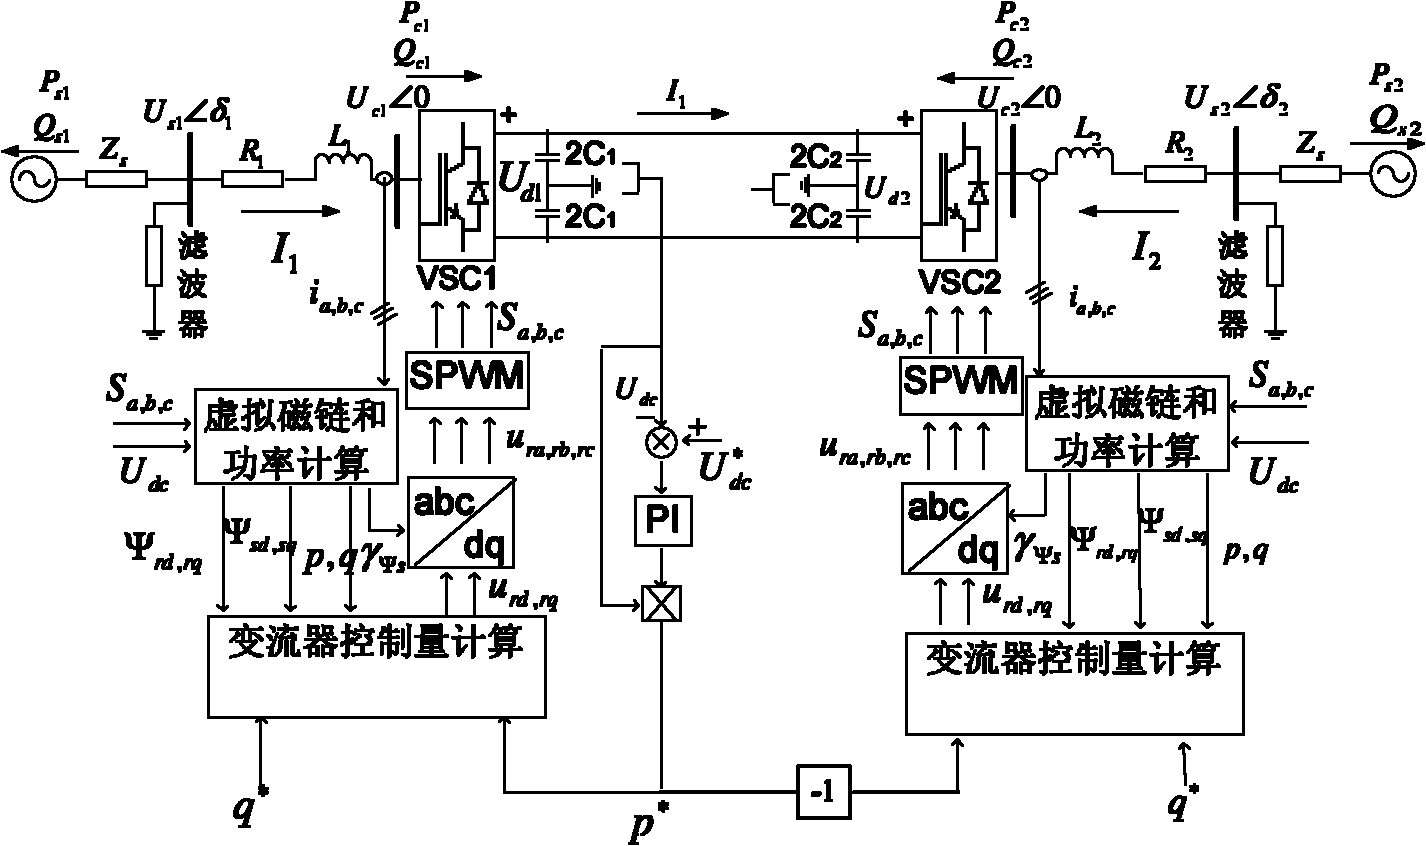 Control method of alternating voltage sensorless high voltage direct current transmission converter